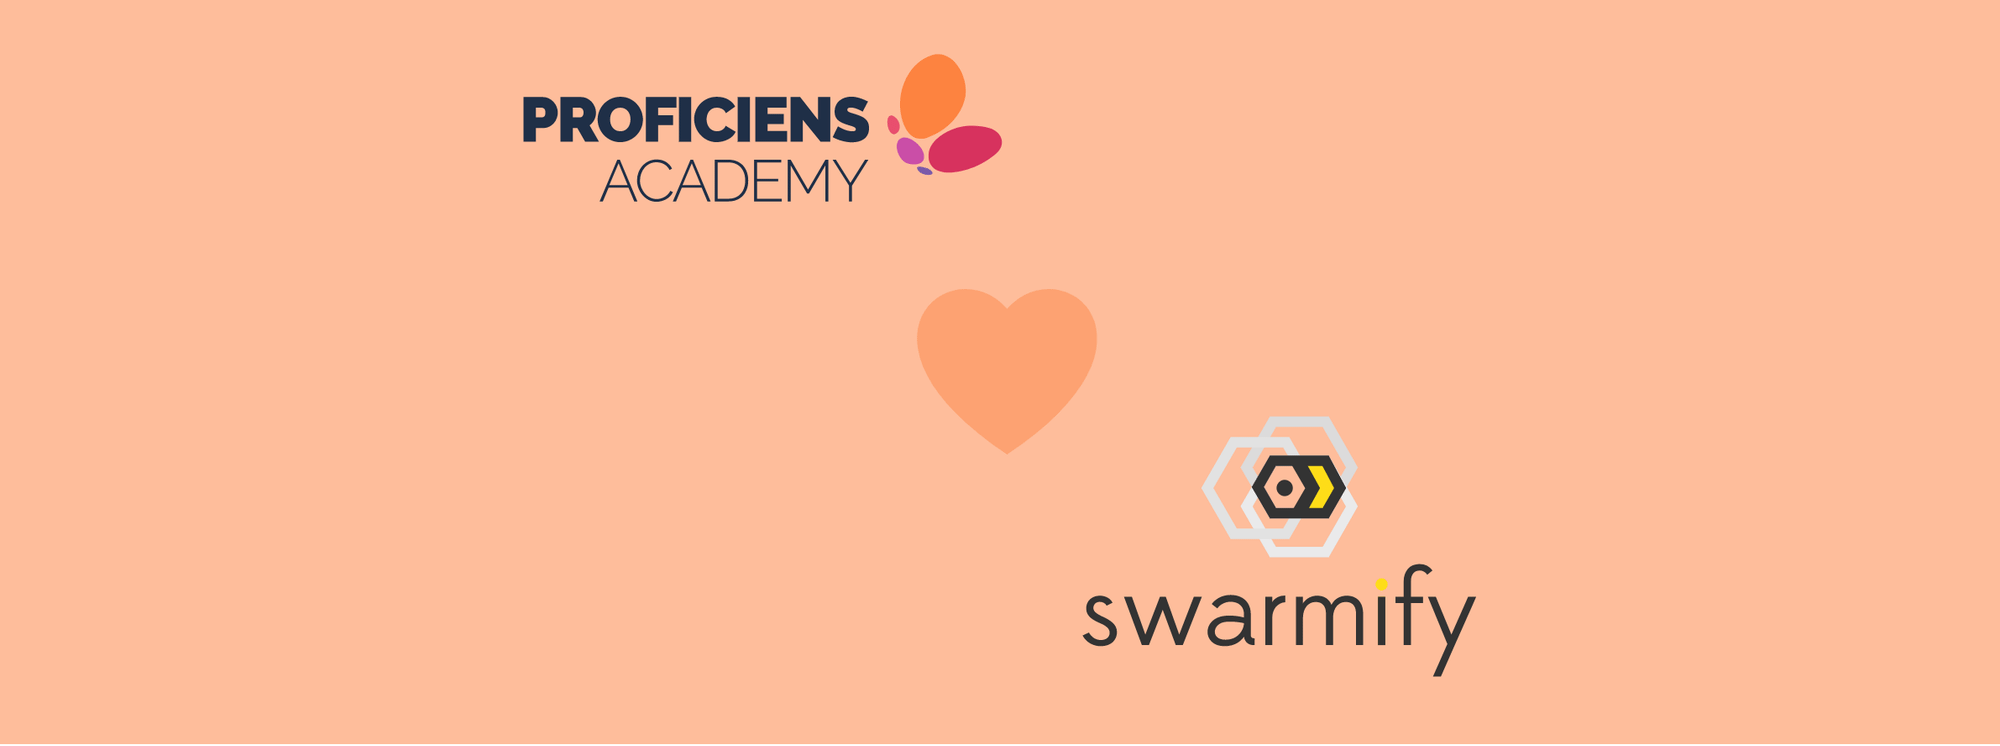 Proficiens Academy loves Swarmify